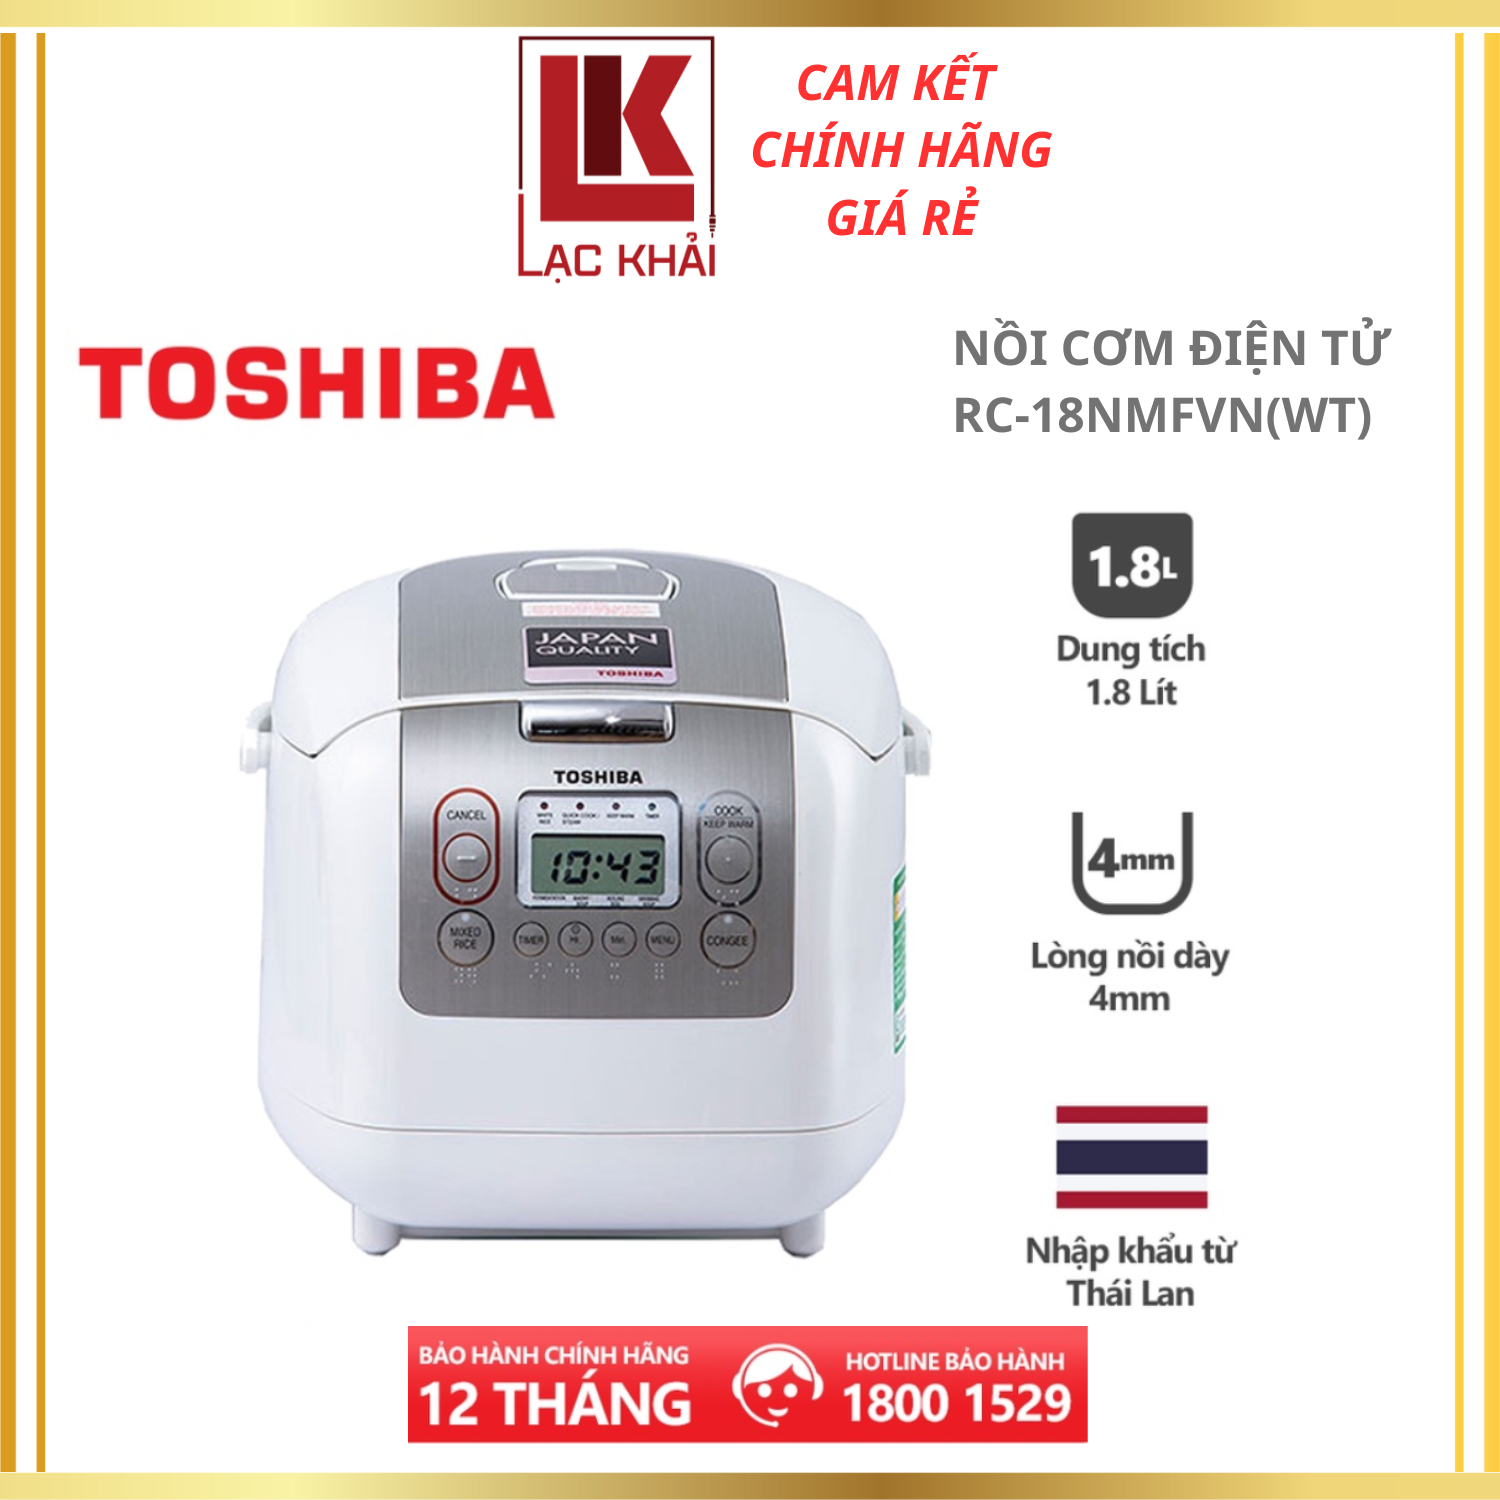 Nồi cơm điện tử Toshiba RC-18NMFVN(WT) - 1.8L - Xuất xứ Thái Lan - Lòng nồi dày 4mm, 2 lớp chống dính trong và ngoài - Chế độ nấu tự động đa dạng - Hàng chính hãng, bảo hành 12 tháng, chất lượng Nhật Bản